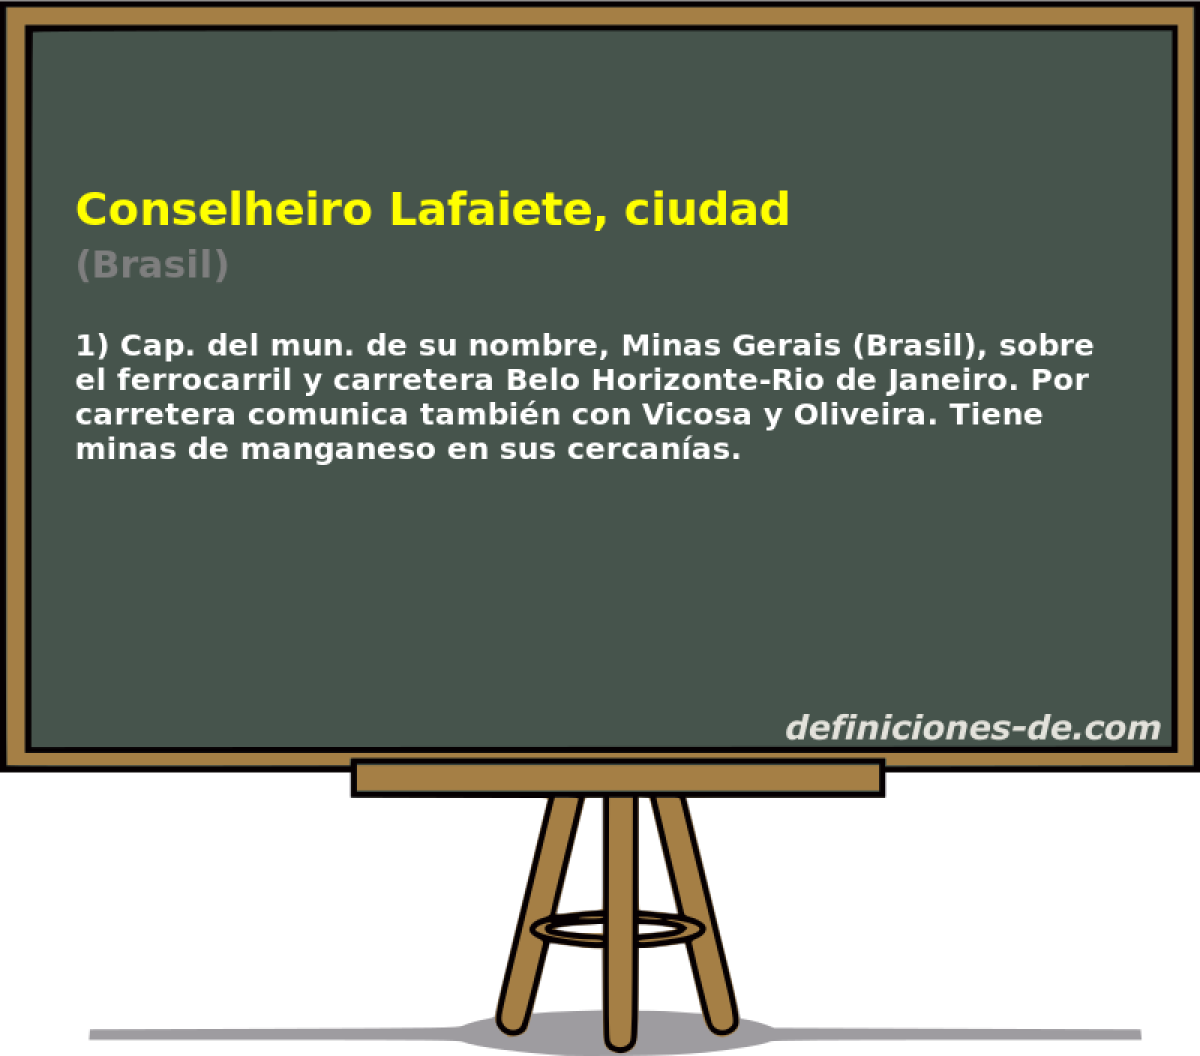 Conselheiro Lafaiete, ciudad (Brasil)